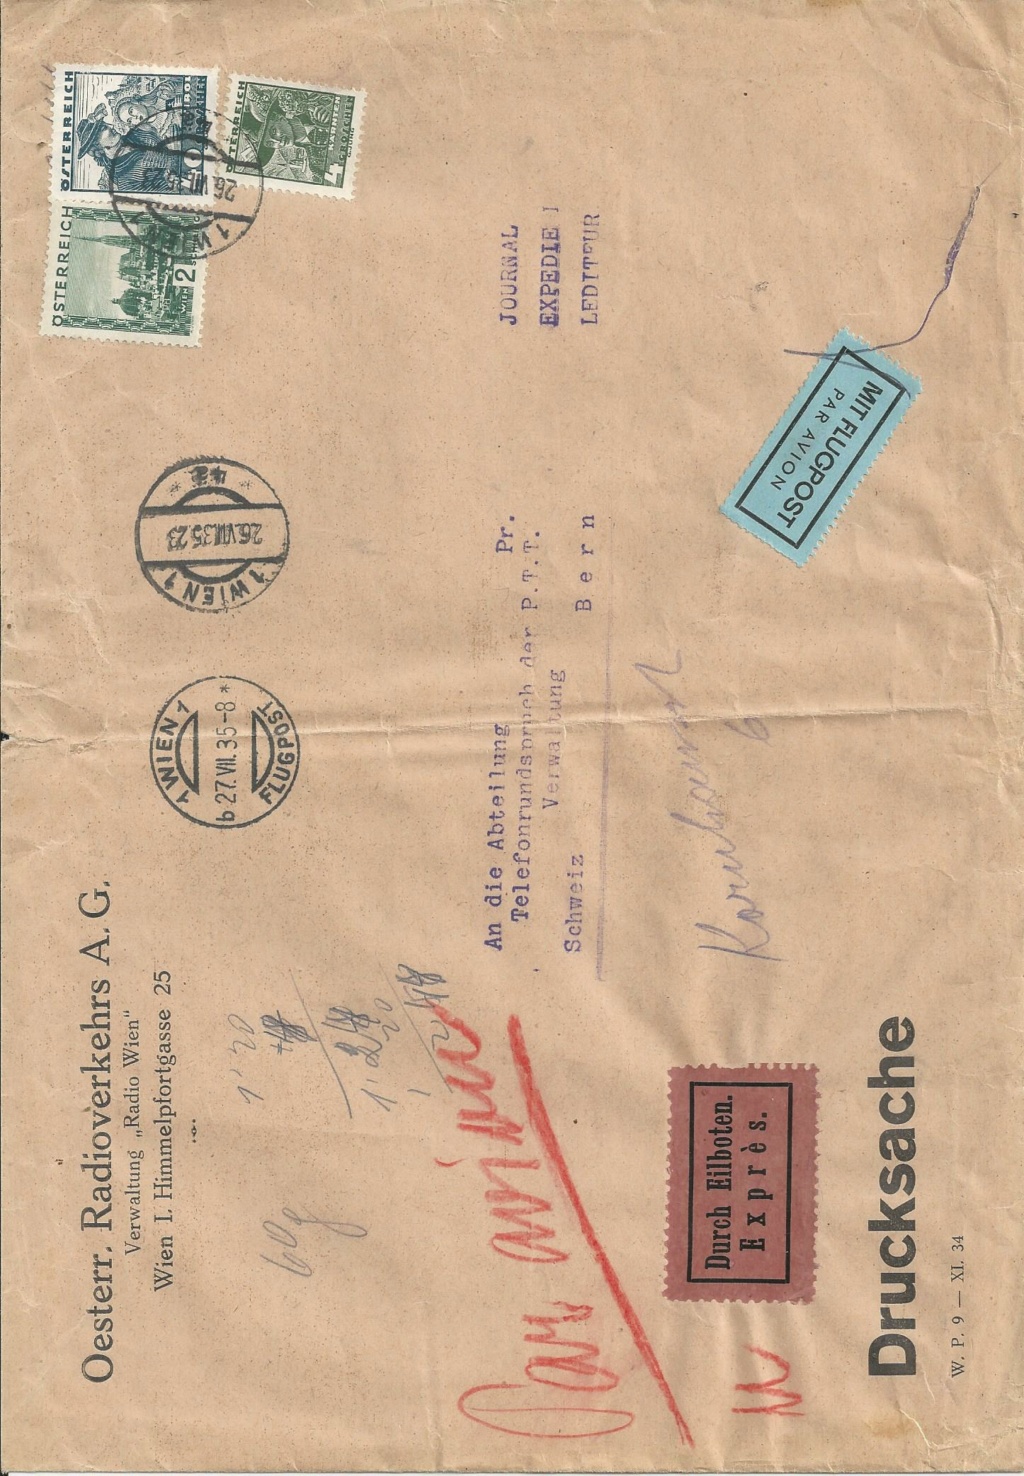 nach - Österreich 1925 - 1938 - Seite 20 Bild1355